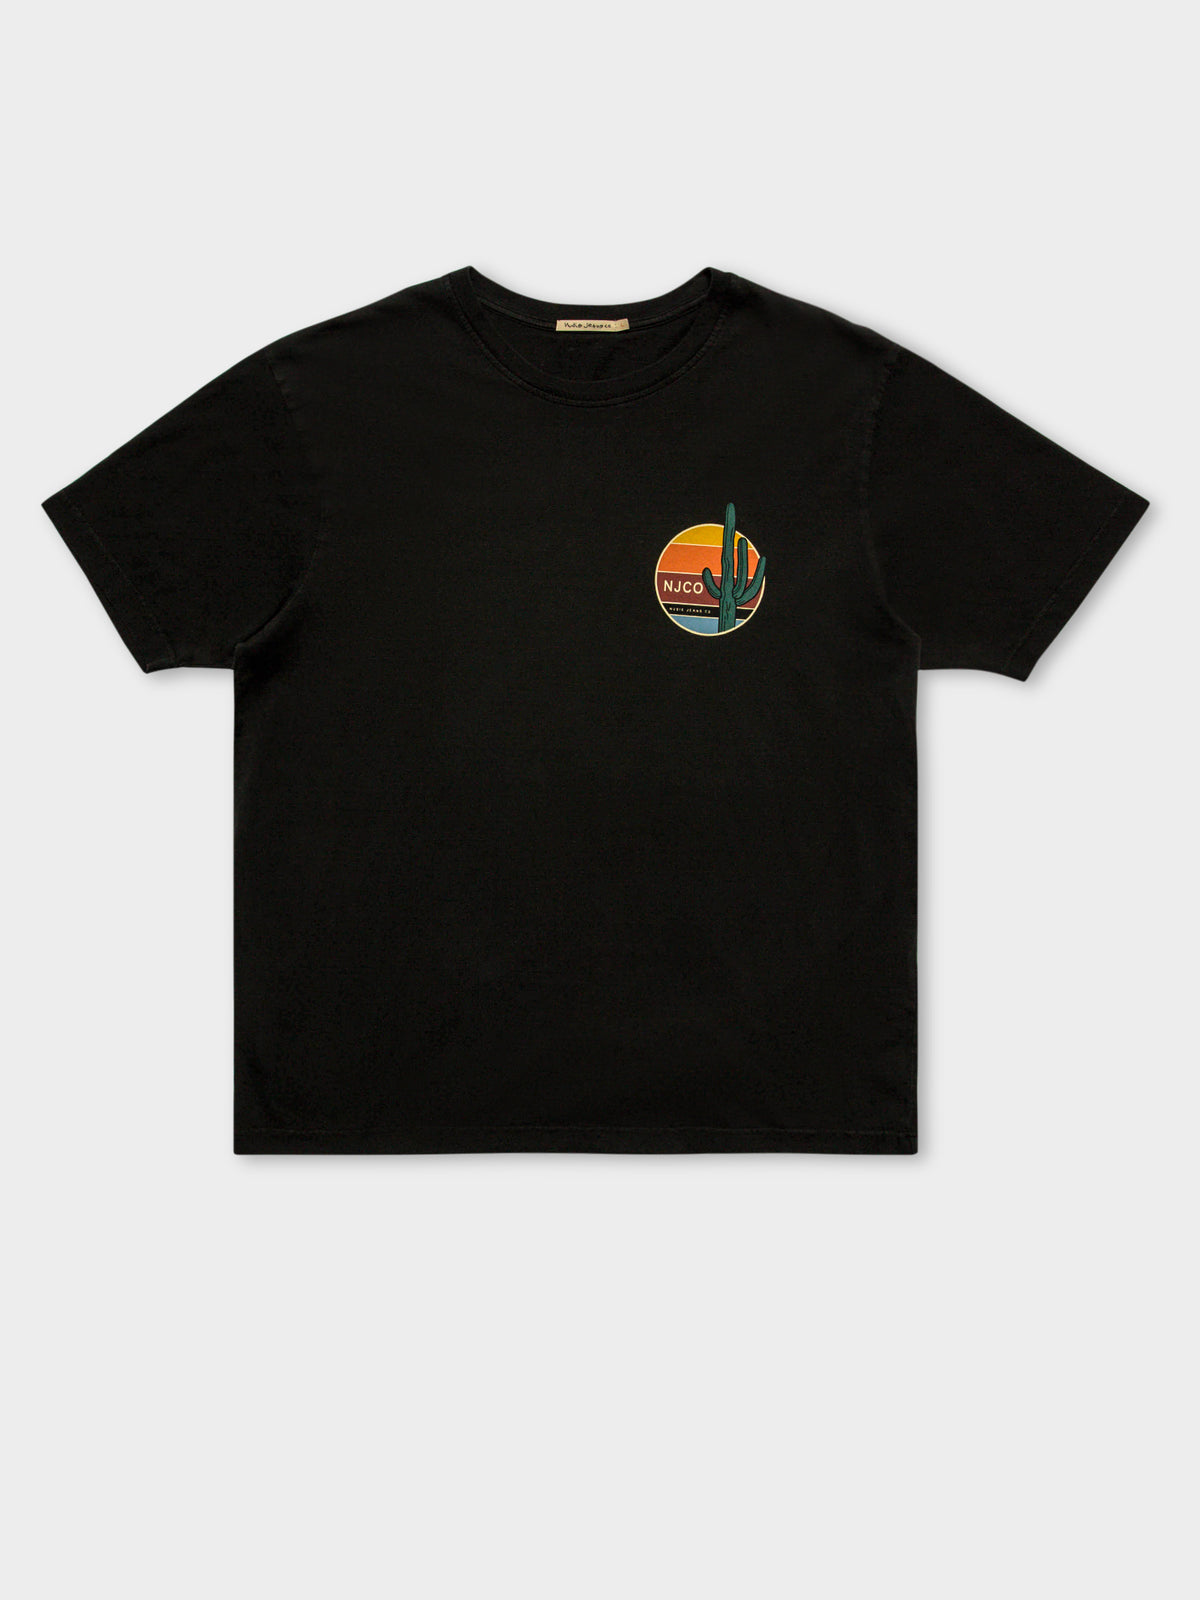 Uno Cactus T-Shirt in Black